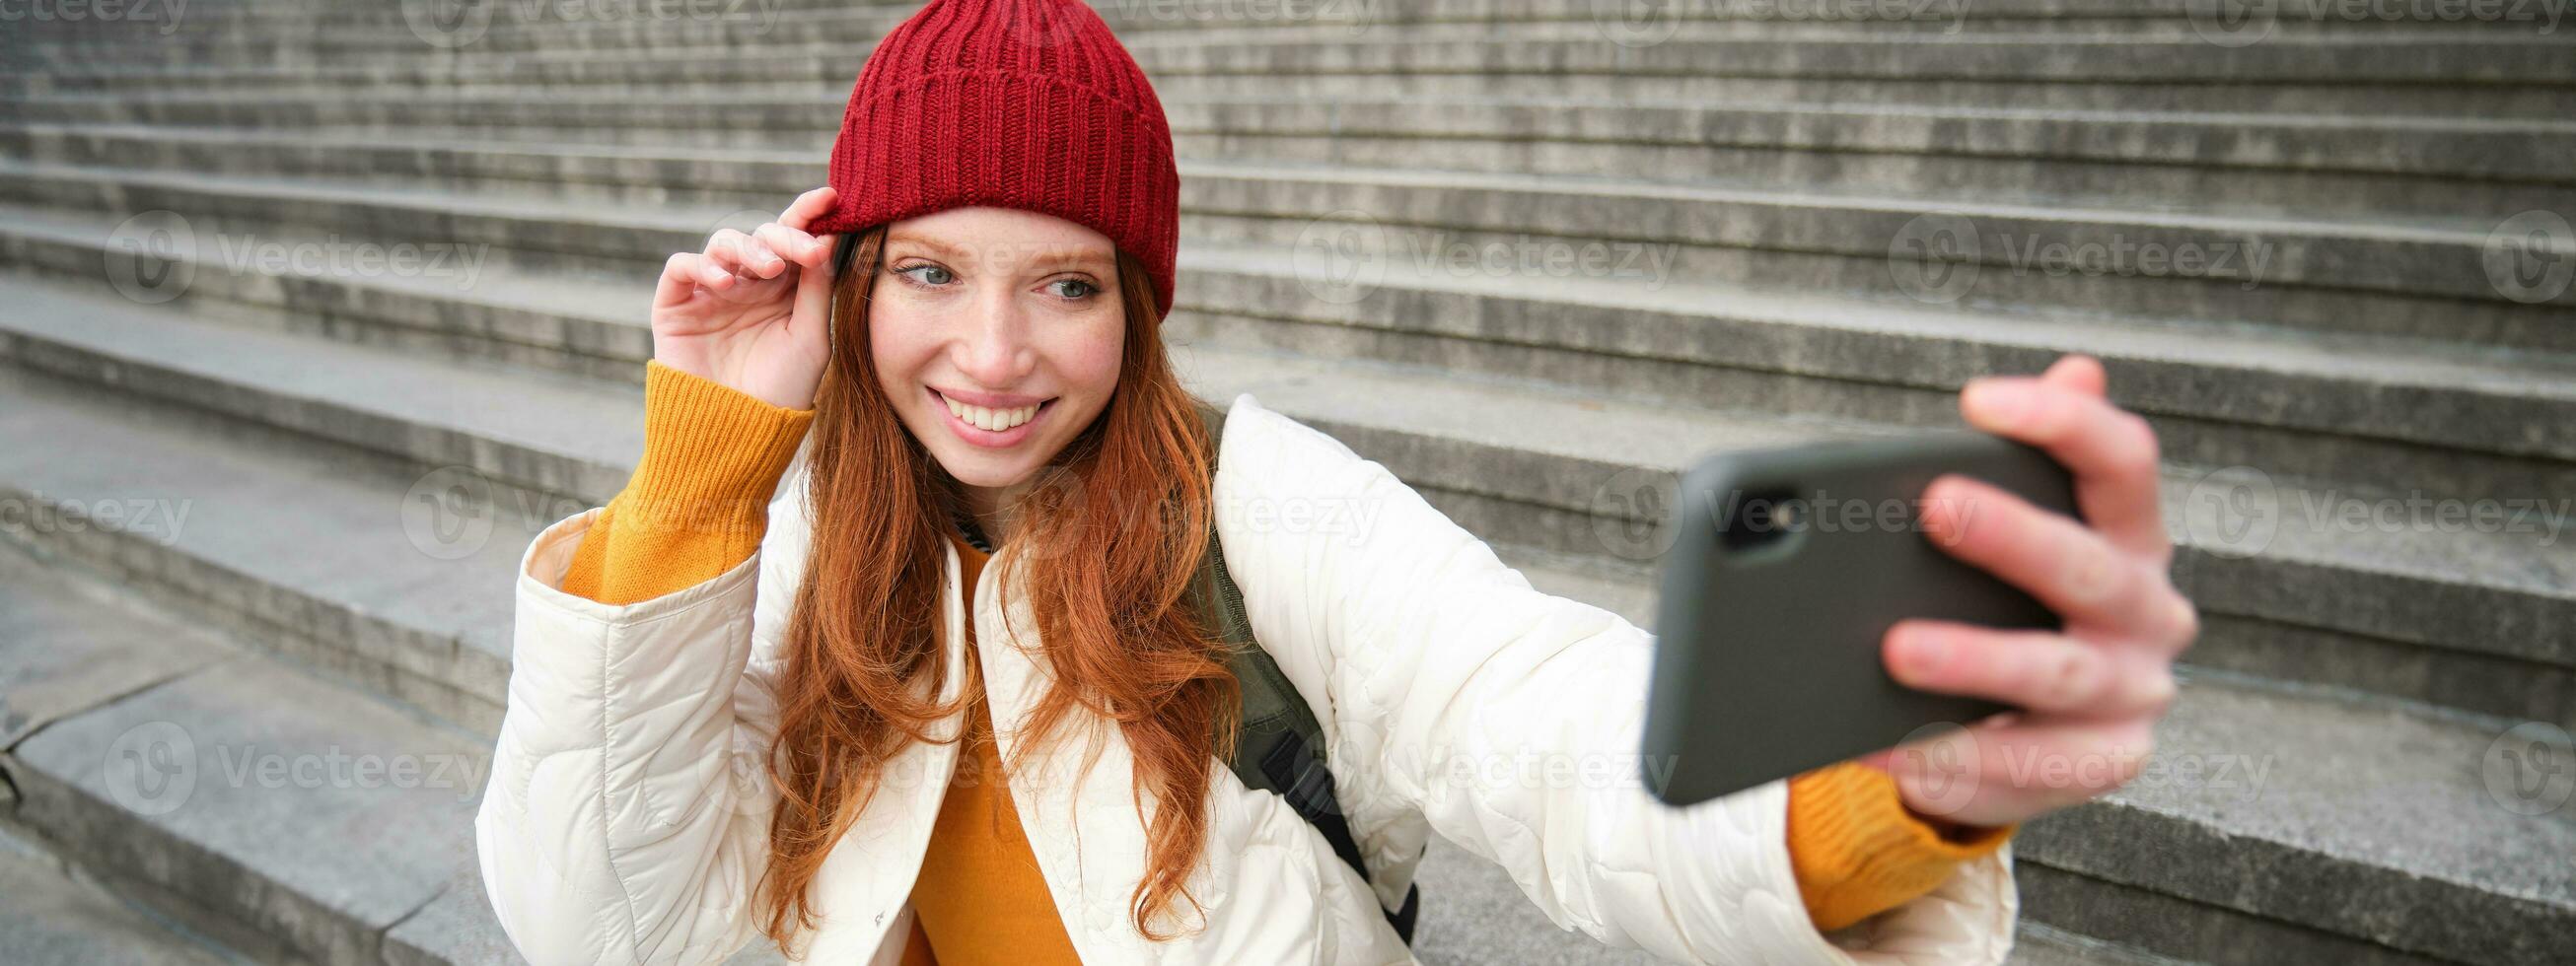 élégant Jeune fille dans rouge chapeau, prend Photos sur téléphone intelligent caméra, fait du selfie comme elle est assis sur escaliers près musée, posant pour photo avec app filtre